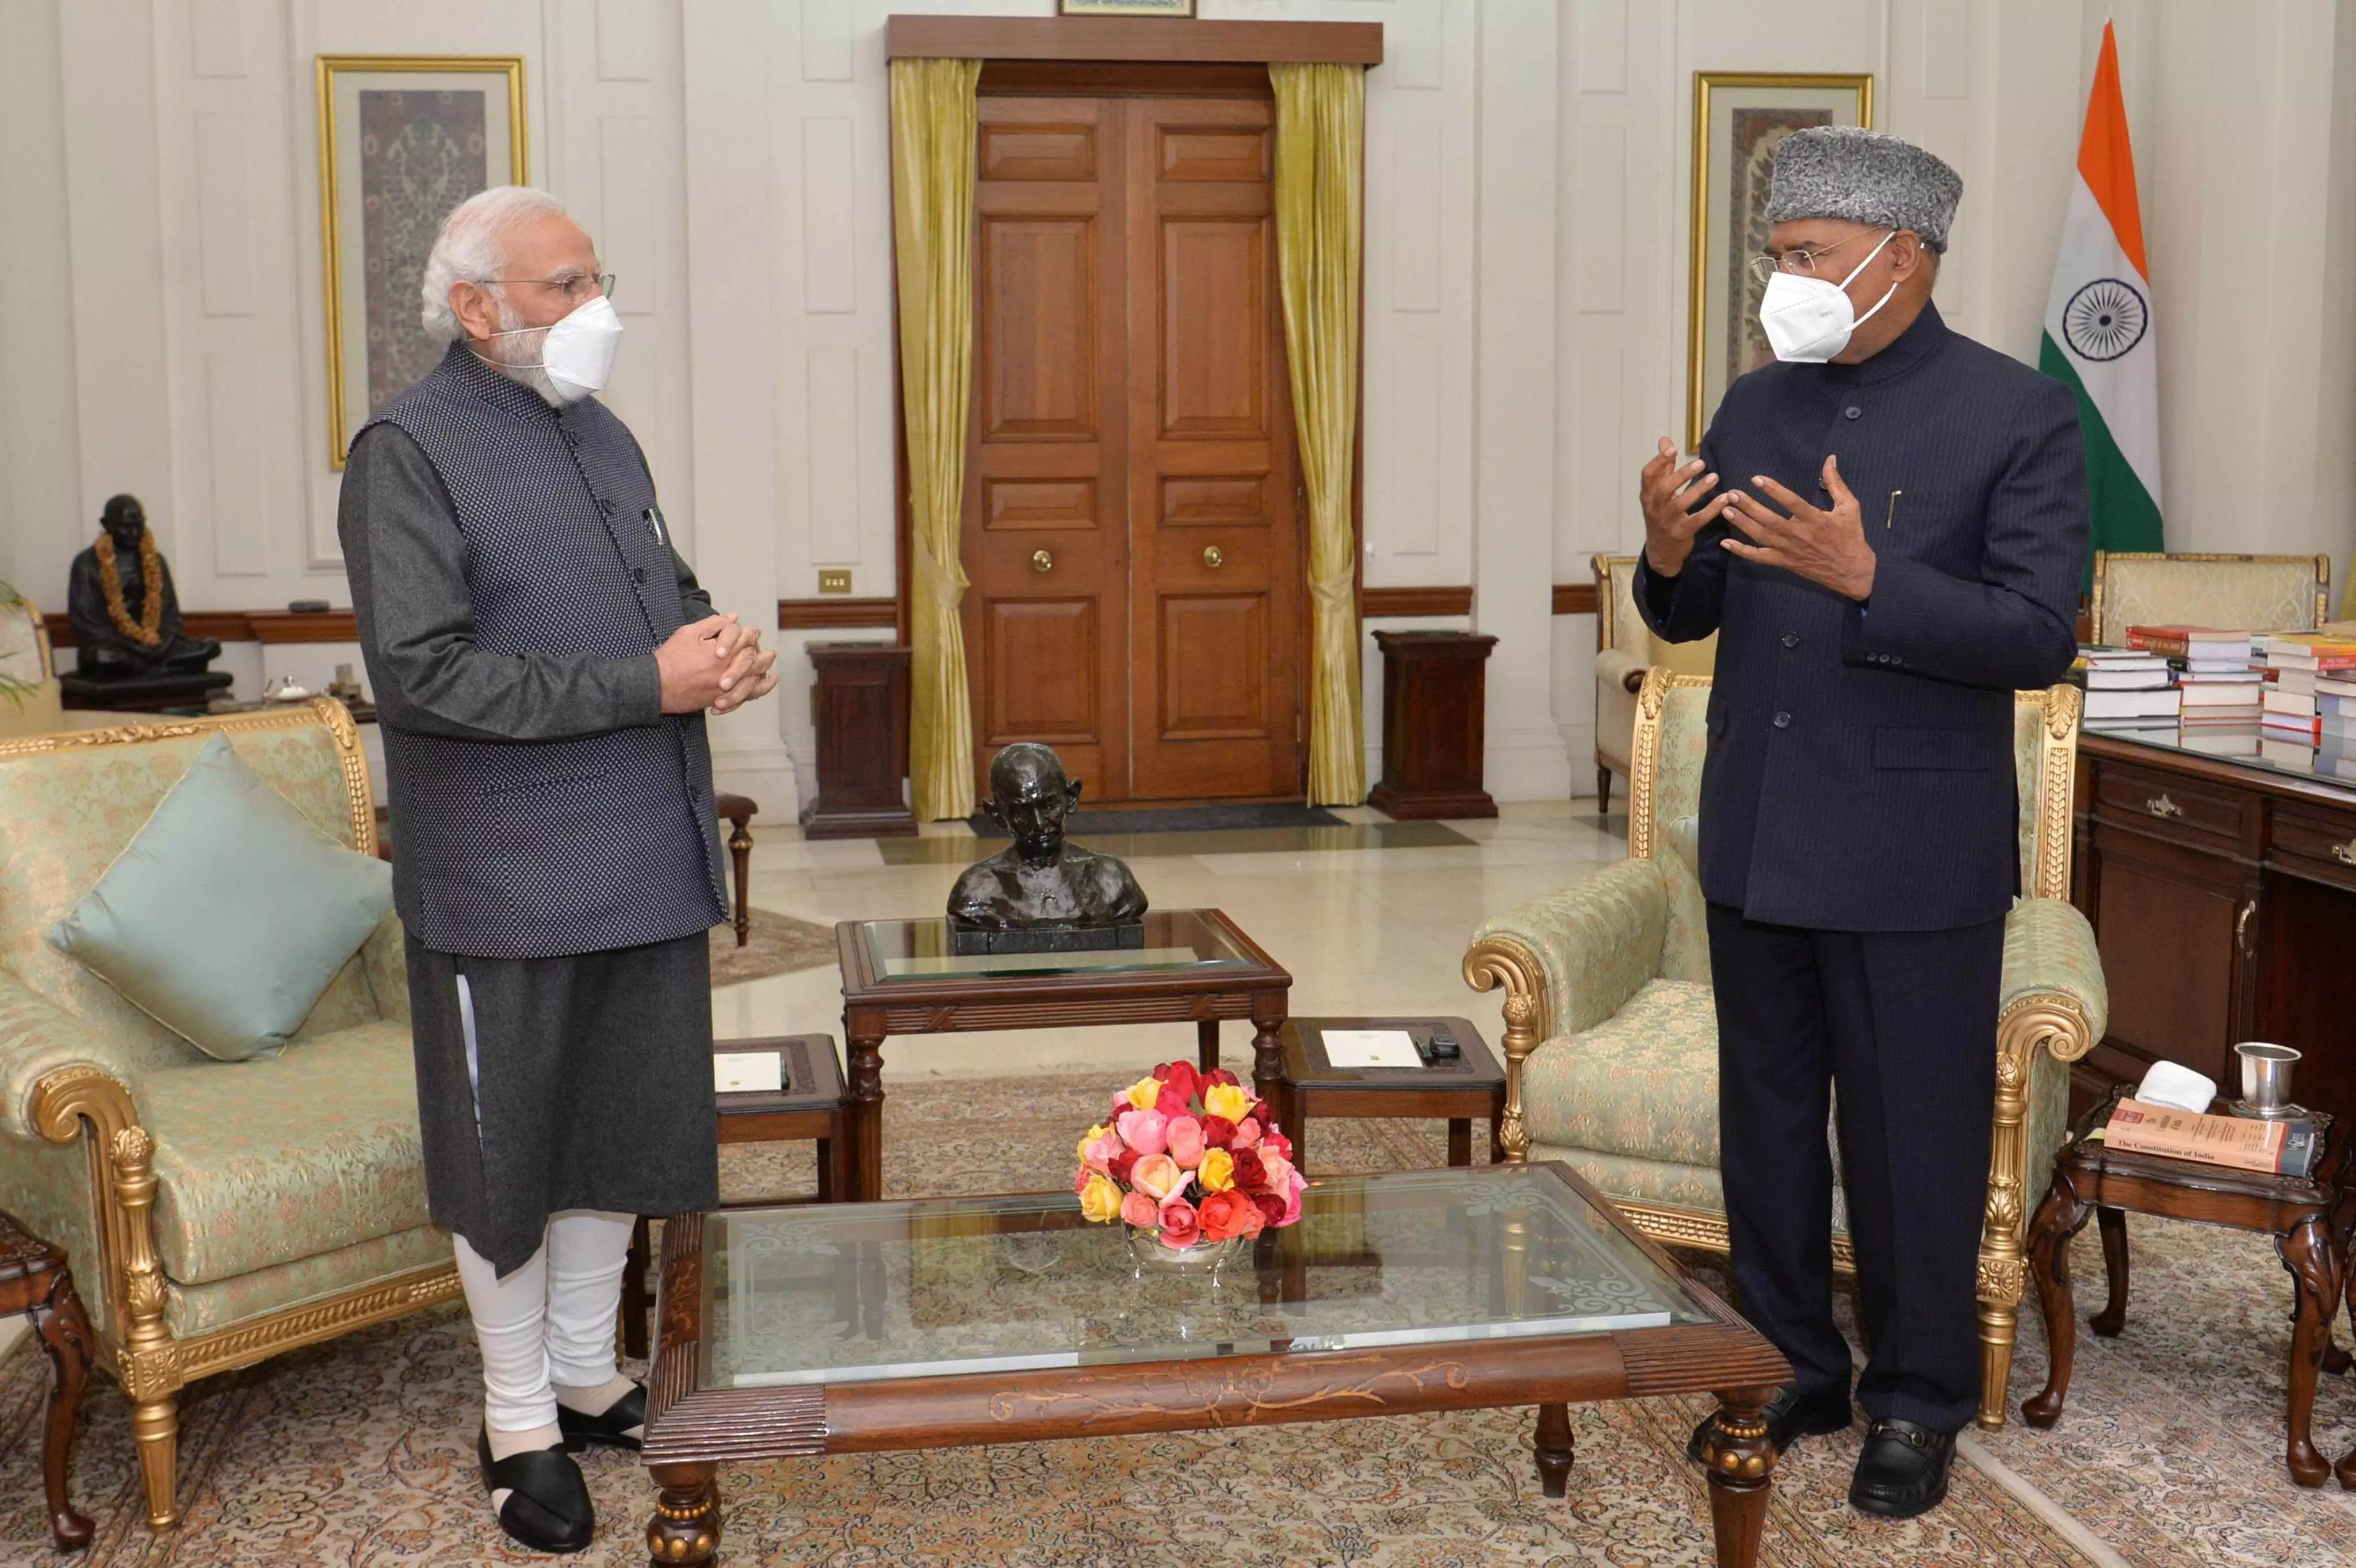 PM Modi Security Breach: सुप्रीम कोर्ट कल करेगा सुनवाई, प्रधानमंत्री मोदी से मिले राष्ट्रपति कोविंद, जानिए 10 बड़ी बातें